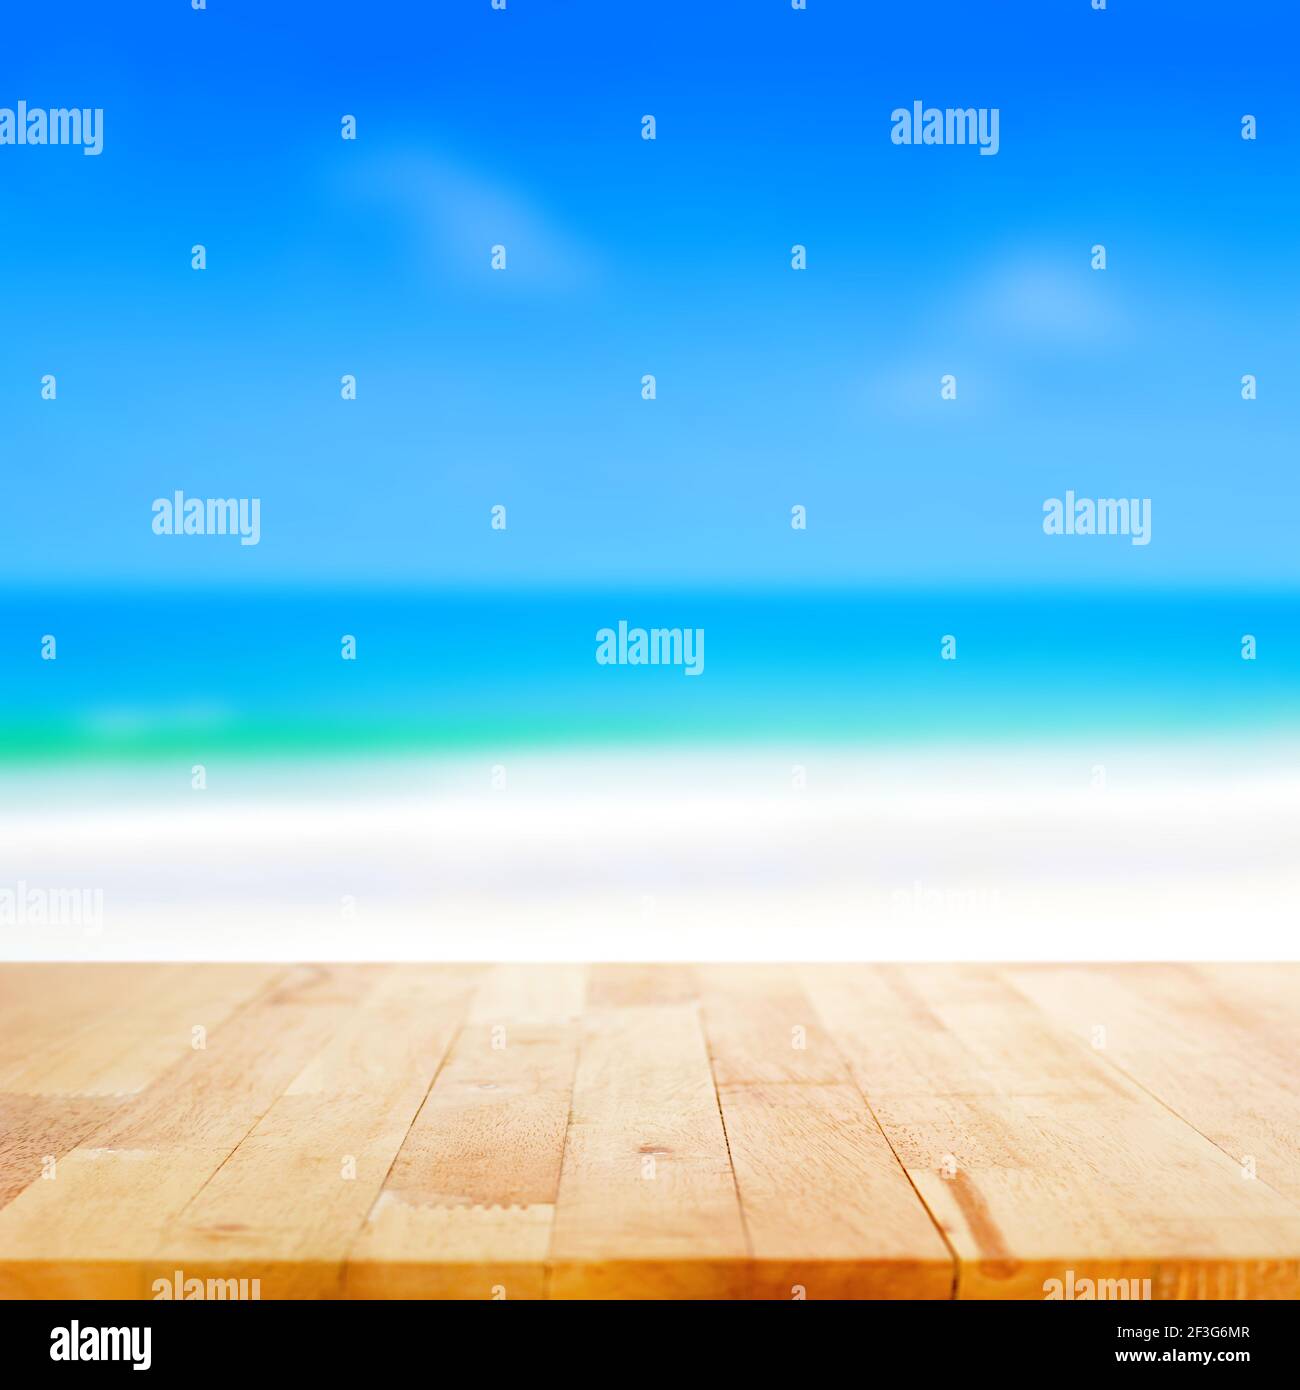 Holztischplatte auf verschwommenem Strand Hintergrund, Sommer-Konzept - kann für die Anzeige oder Montage Ihrer Produkte verwendet werden Stockfoto